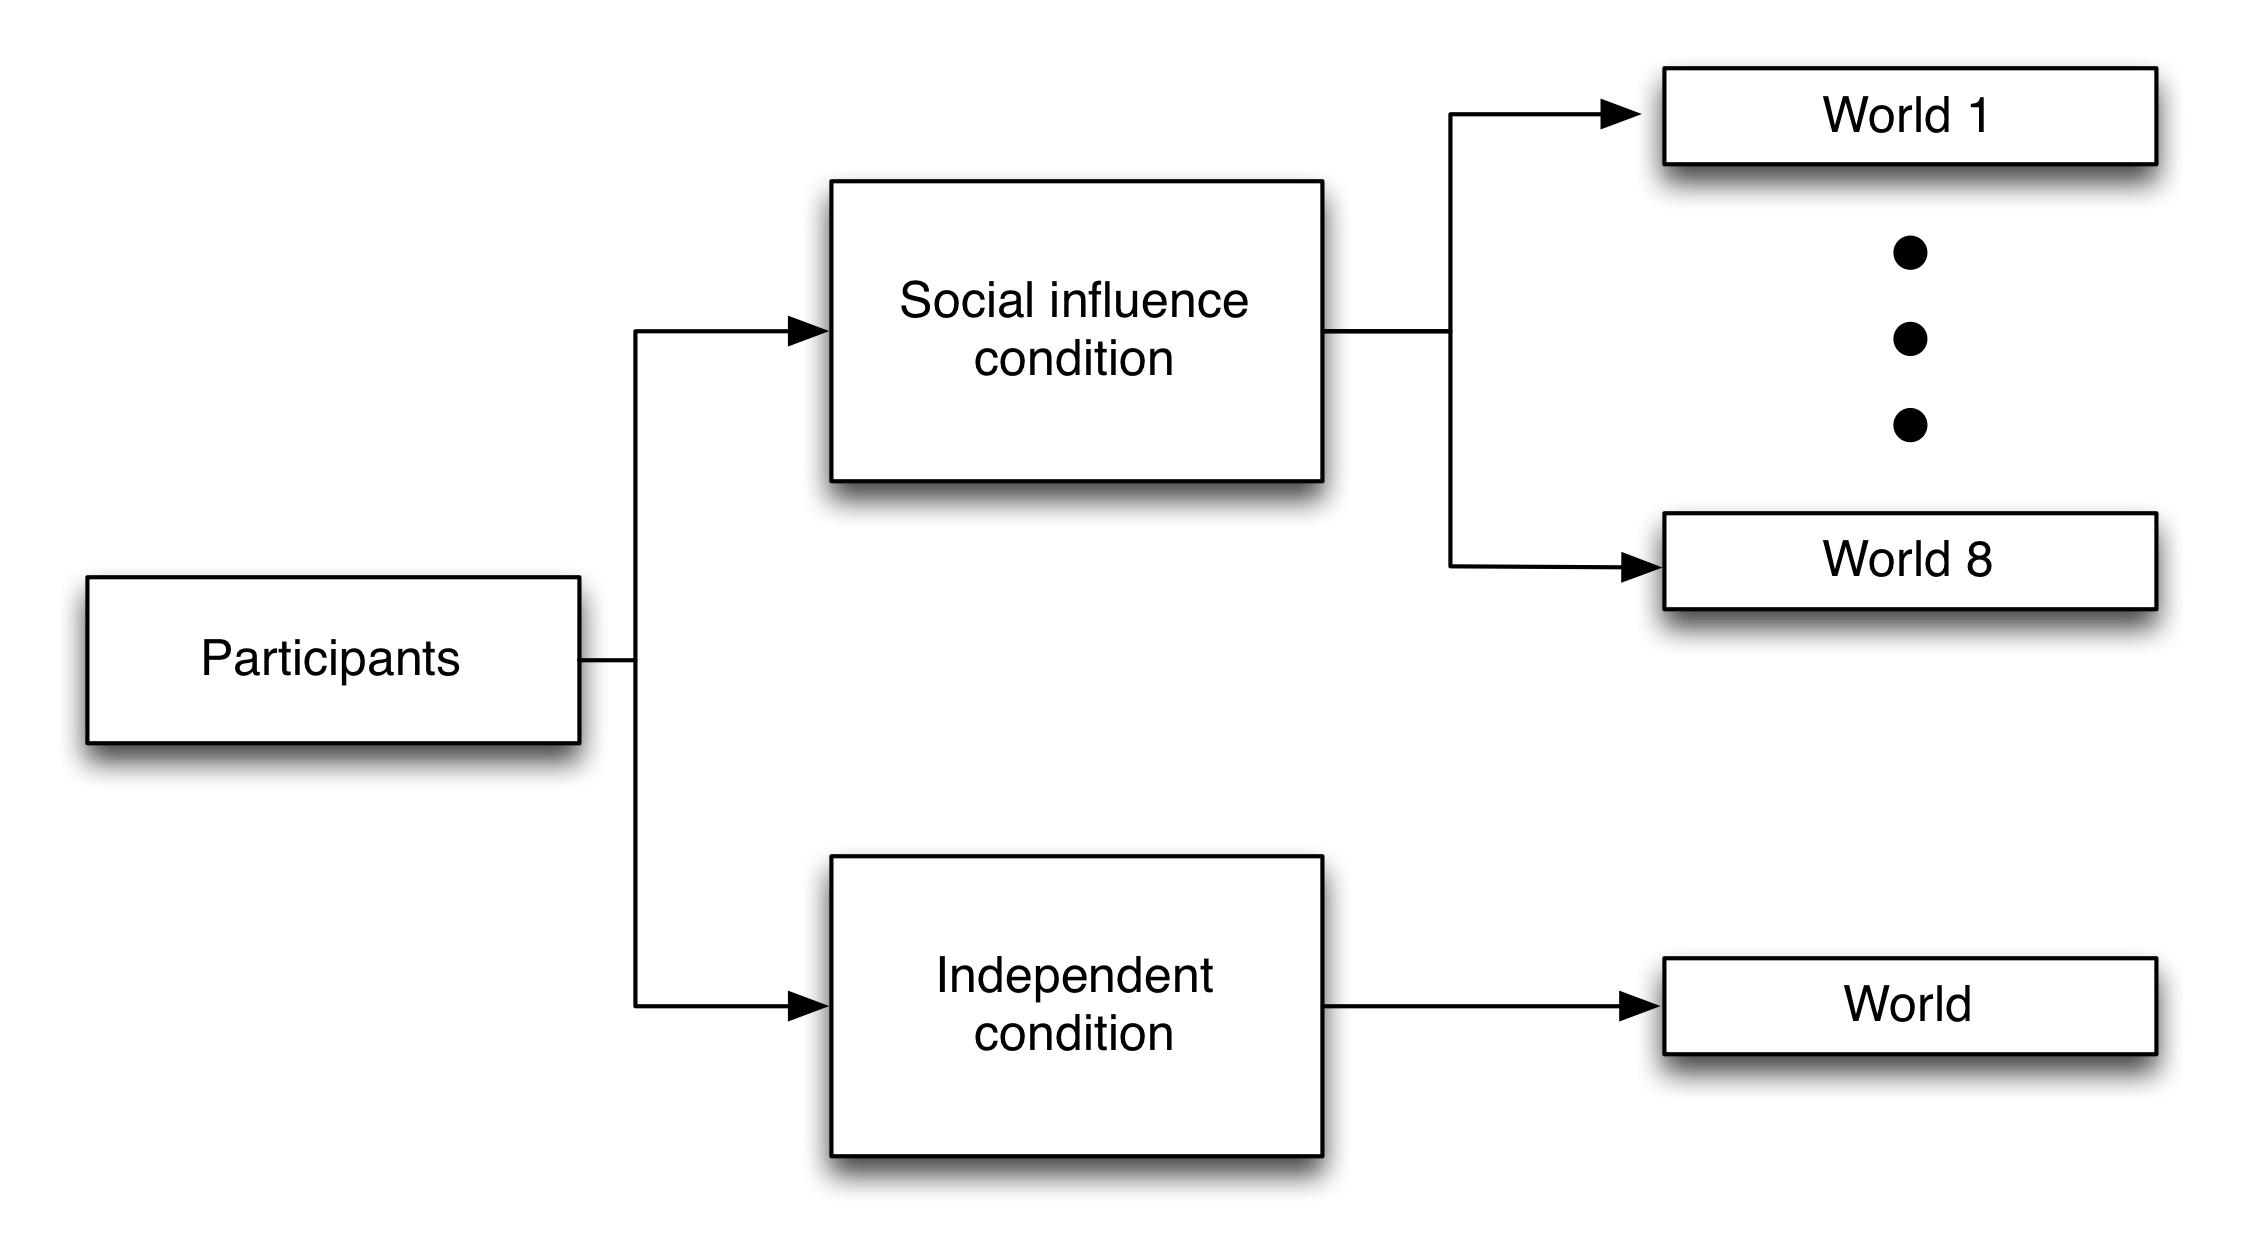 Նկար 4.21. Երաժշտության լաբորատորիաների փորձարկումների փորձարկումները (Salganik, Dodds, and Watts 2006): Մասնակիցները պատահականորեն հանձնվեցին երկու պայմաններից մեկին `անկախ եւ հասարակական ազդեցություն: Անկախ վիճակում գտնվող մասնակիցներն իրենց ընտրությունը կատարել են առանց որեւէ այլ տեղեկության, թե ինչ են արել ուրիշները: Սոցիալական ազդեցության պայմաններում մասնակիցները պատահականորեն հանձնվեցին ութ զուգահեռ աշխարհներից մեկին, որտեղ նրանք տեսնում էին ժողովրդականությունը, ինչպես նախորդ մասնակիցների ներգրավվածությամբ, այնպես էլ իրենց երգերի յուրաքանչյուր երգի մեջ, բայց նրանք չէին կարողանում տեսնել որեւէ տեղեկություն, ոչ էլ նրանք նույնիսկ իմանալ այլ աշխարհի գոյության մասին: Սալganik- ից, Dodds- ից եւ Watts- ից (2006), հարմարեցված s1- ից: